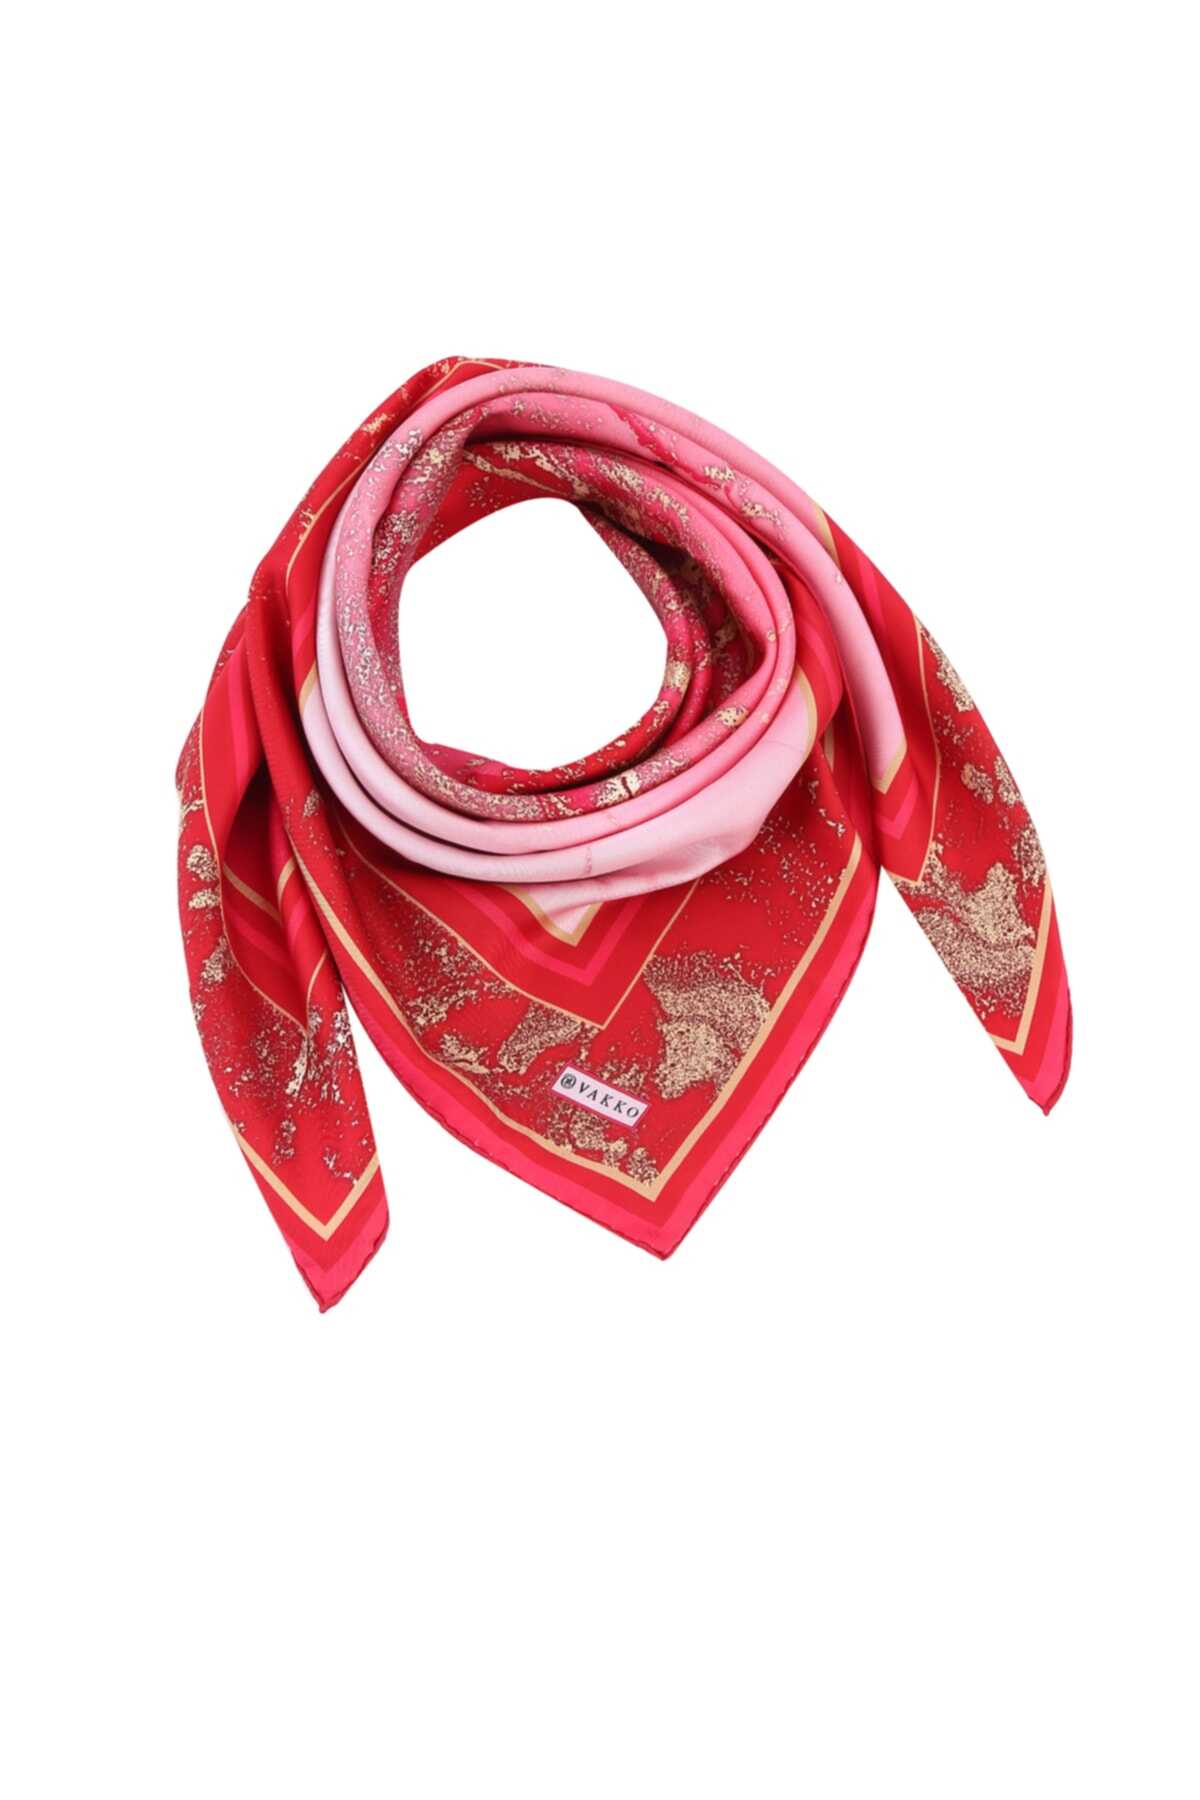 روسری ابریشم طرح آبرنگی قرمز برند Vakko